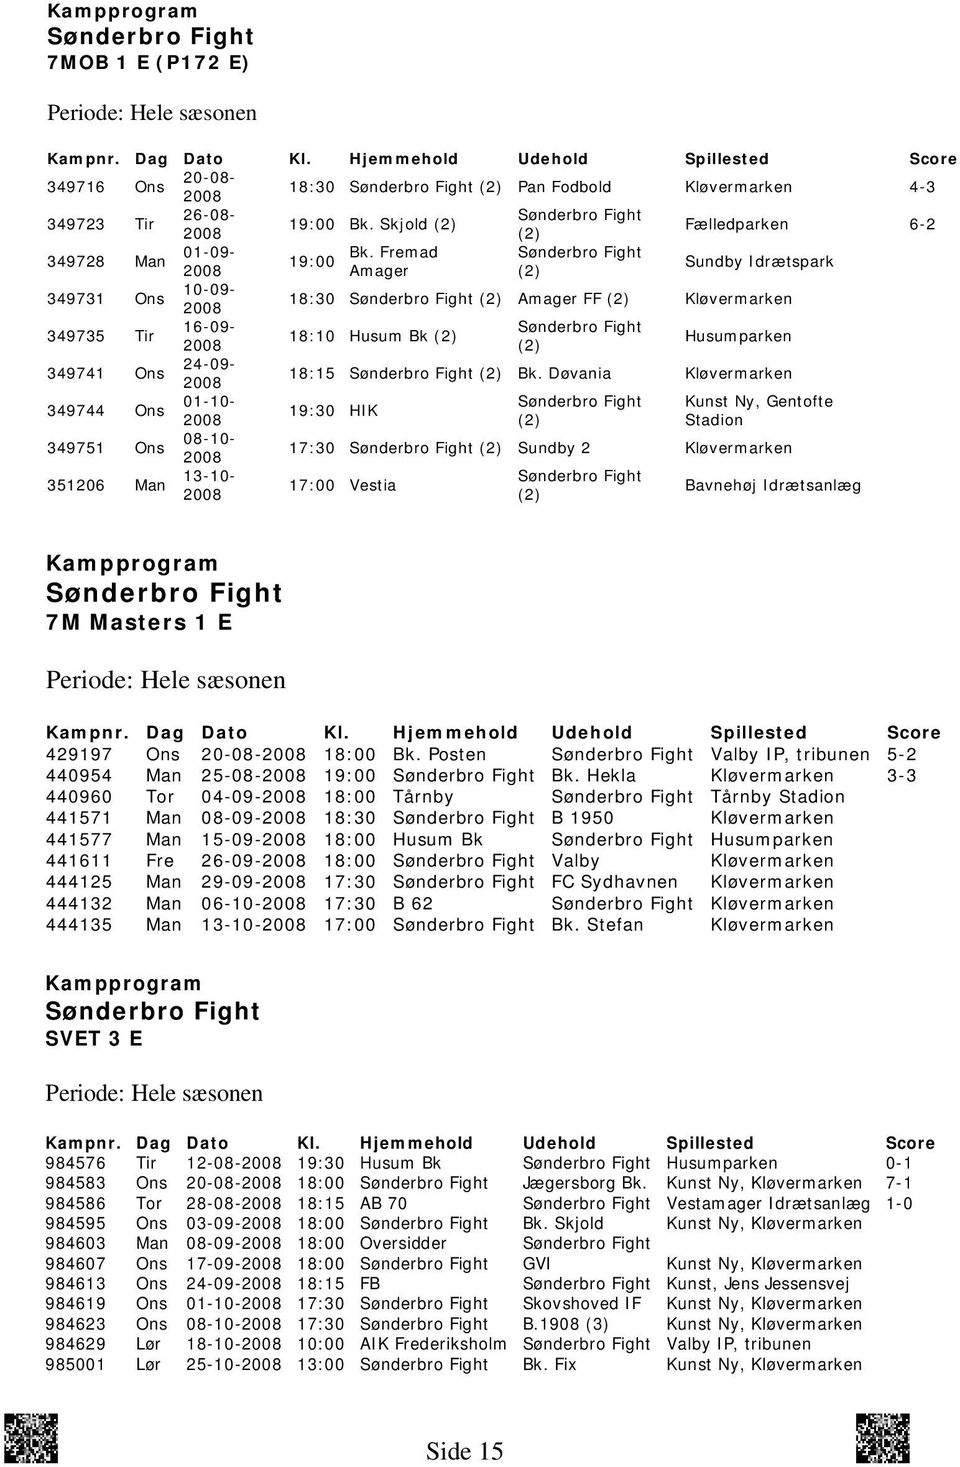 Fremad 19:00 2008 Amager (2) Sundby Idrætspark 349731 Ons 10-09- 2008 18:30 (2) Amager FF (2) Kløvermarken 349735 Tir 16-09- 18:10 Husum Bk (2) 2008 (2) Husumparken 349741 Ons 24-09- 2008 18:15 (2)